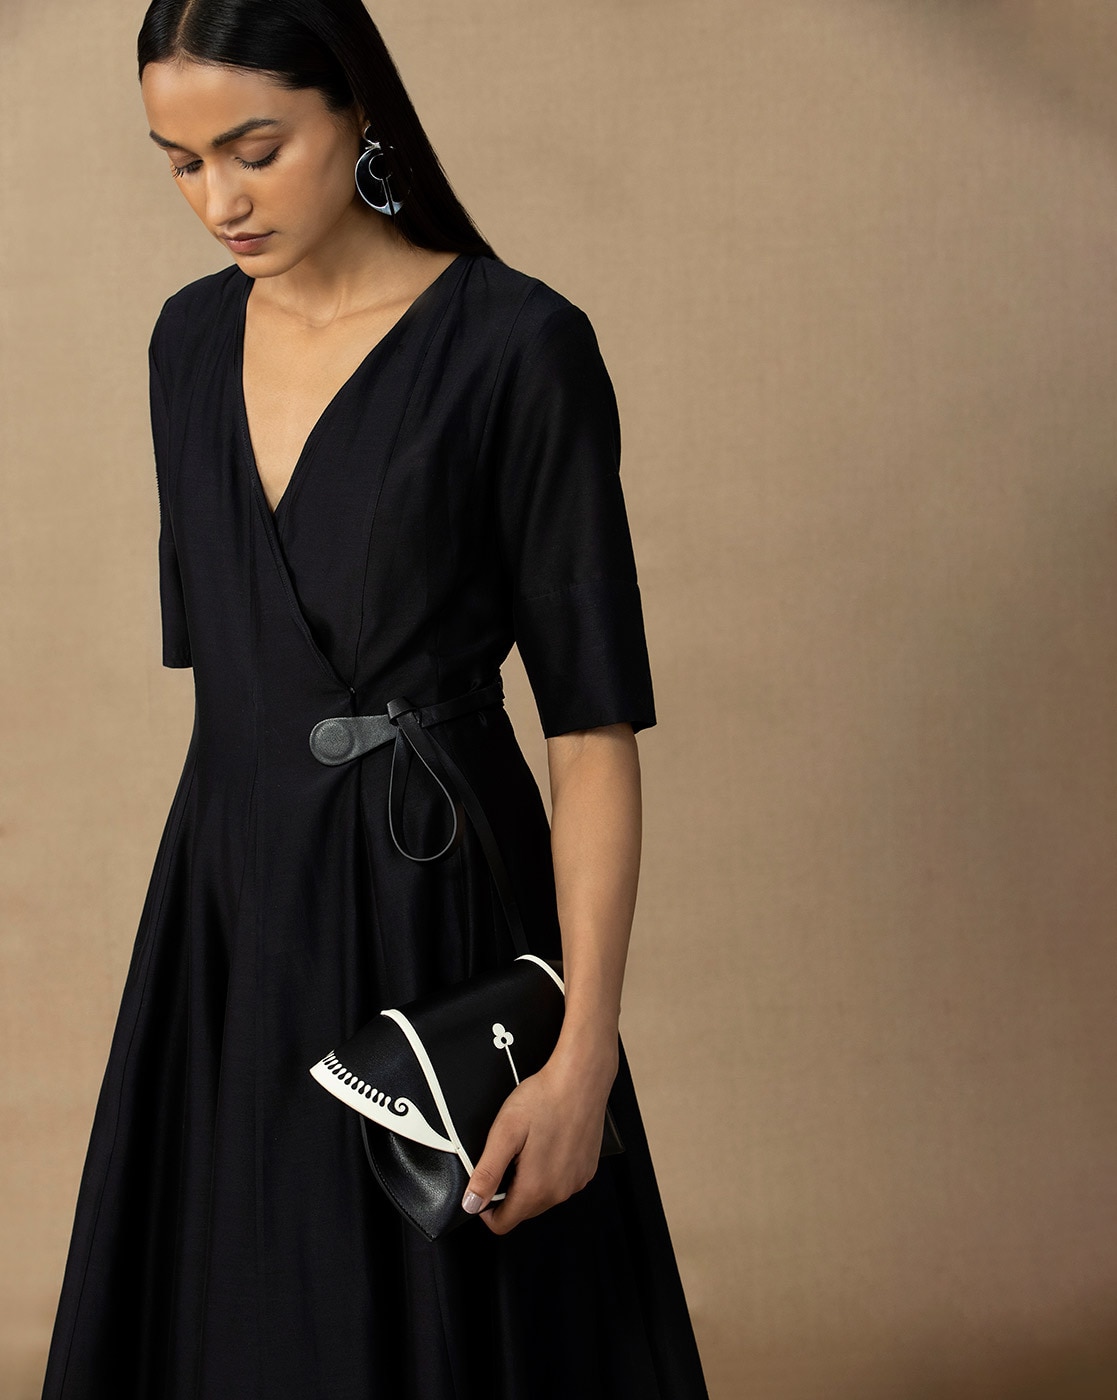 Black Ikat Dress Kurta with Contrast Collar for women Online | Darzaania  Kurtis | CraftsandLooms – CraftsandLooms.com